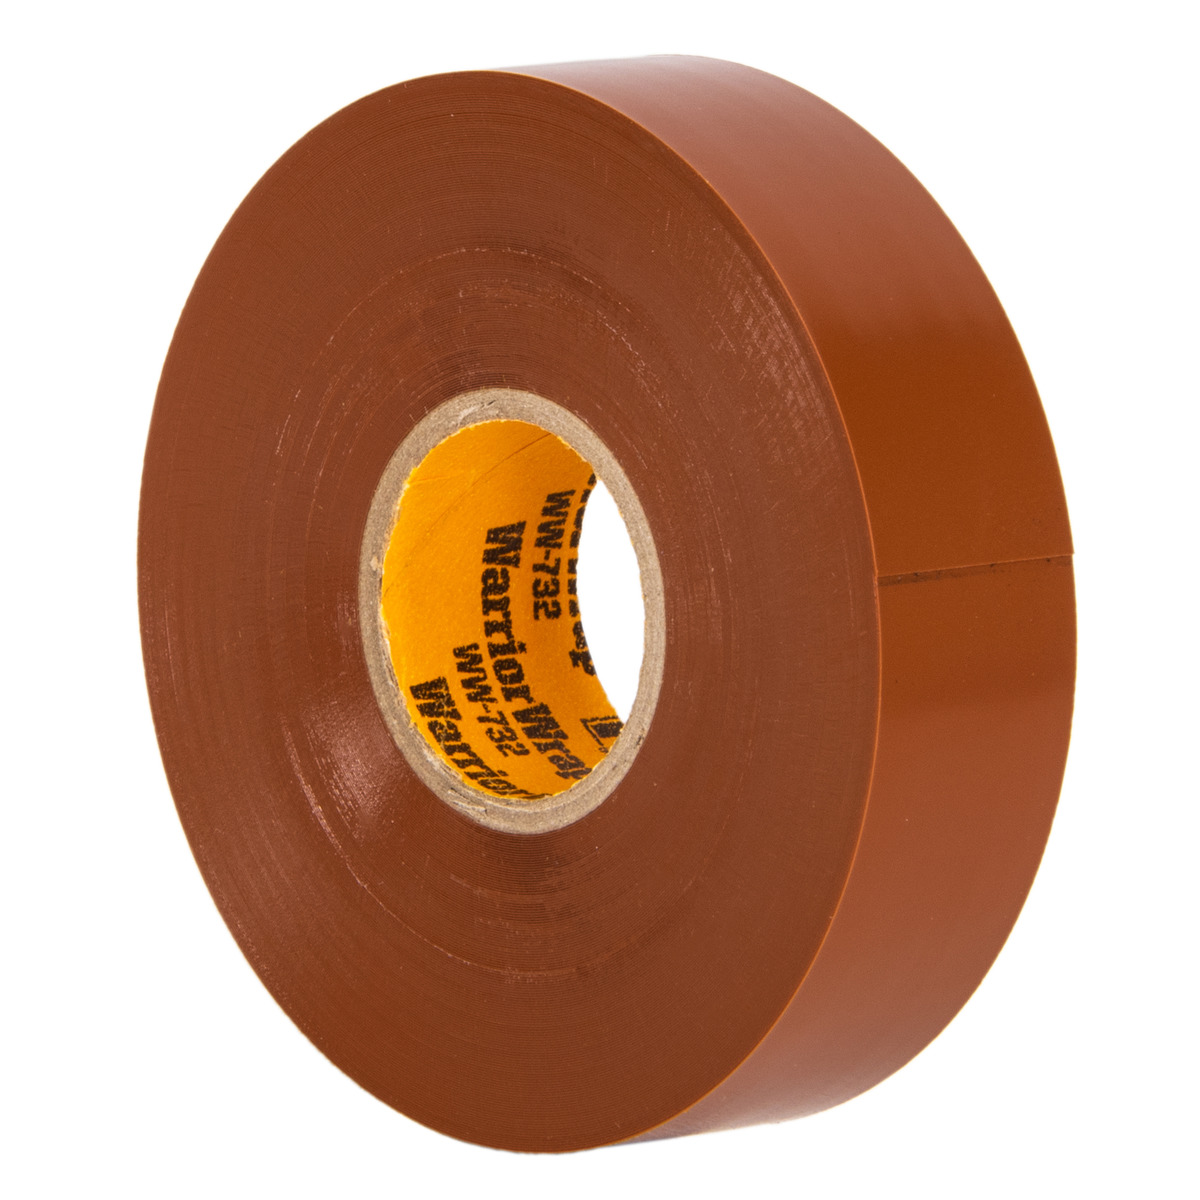 artikel Toelating Inefficiënt Professional Brown Vinyl Electrical Tape, 7mil, 66ft Long - NSI Industries